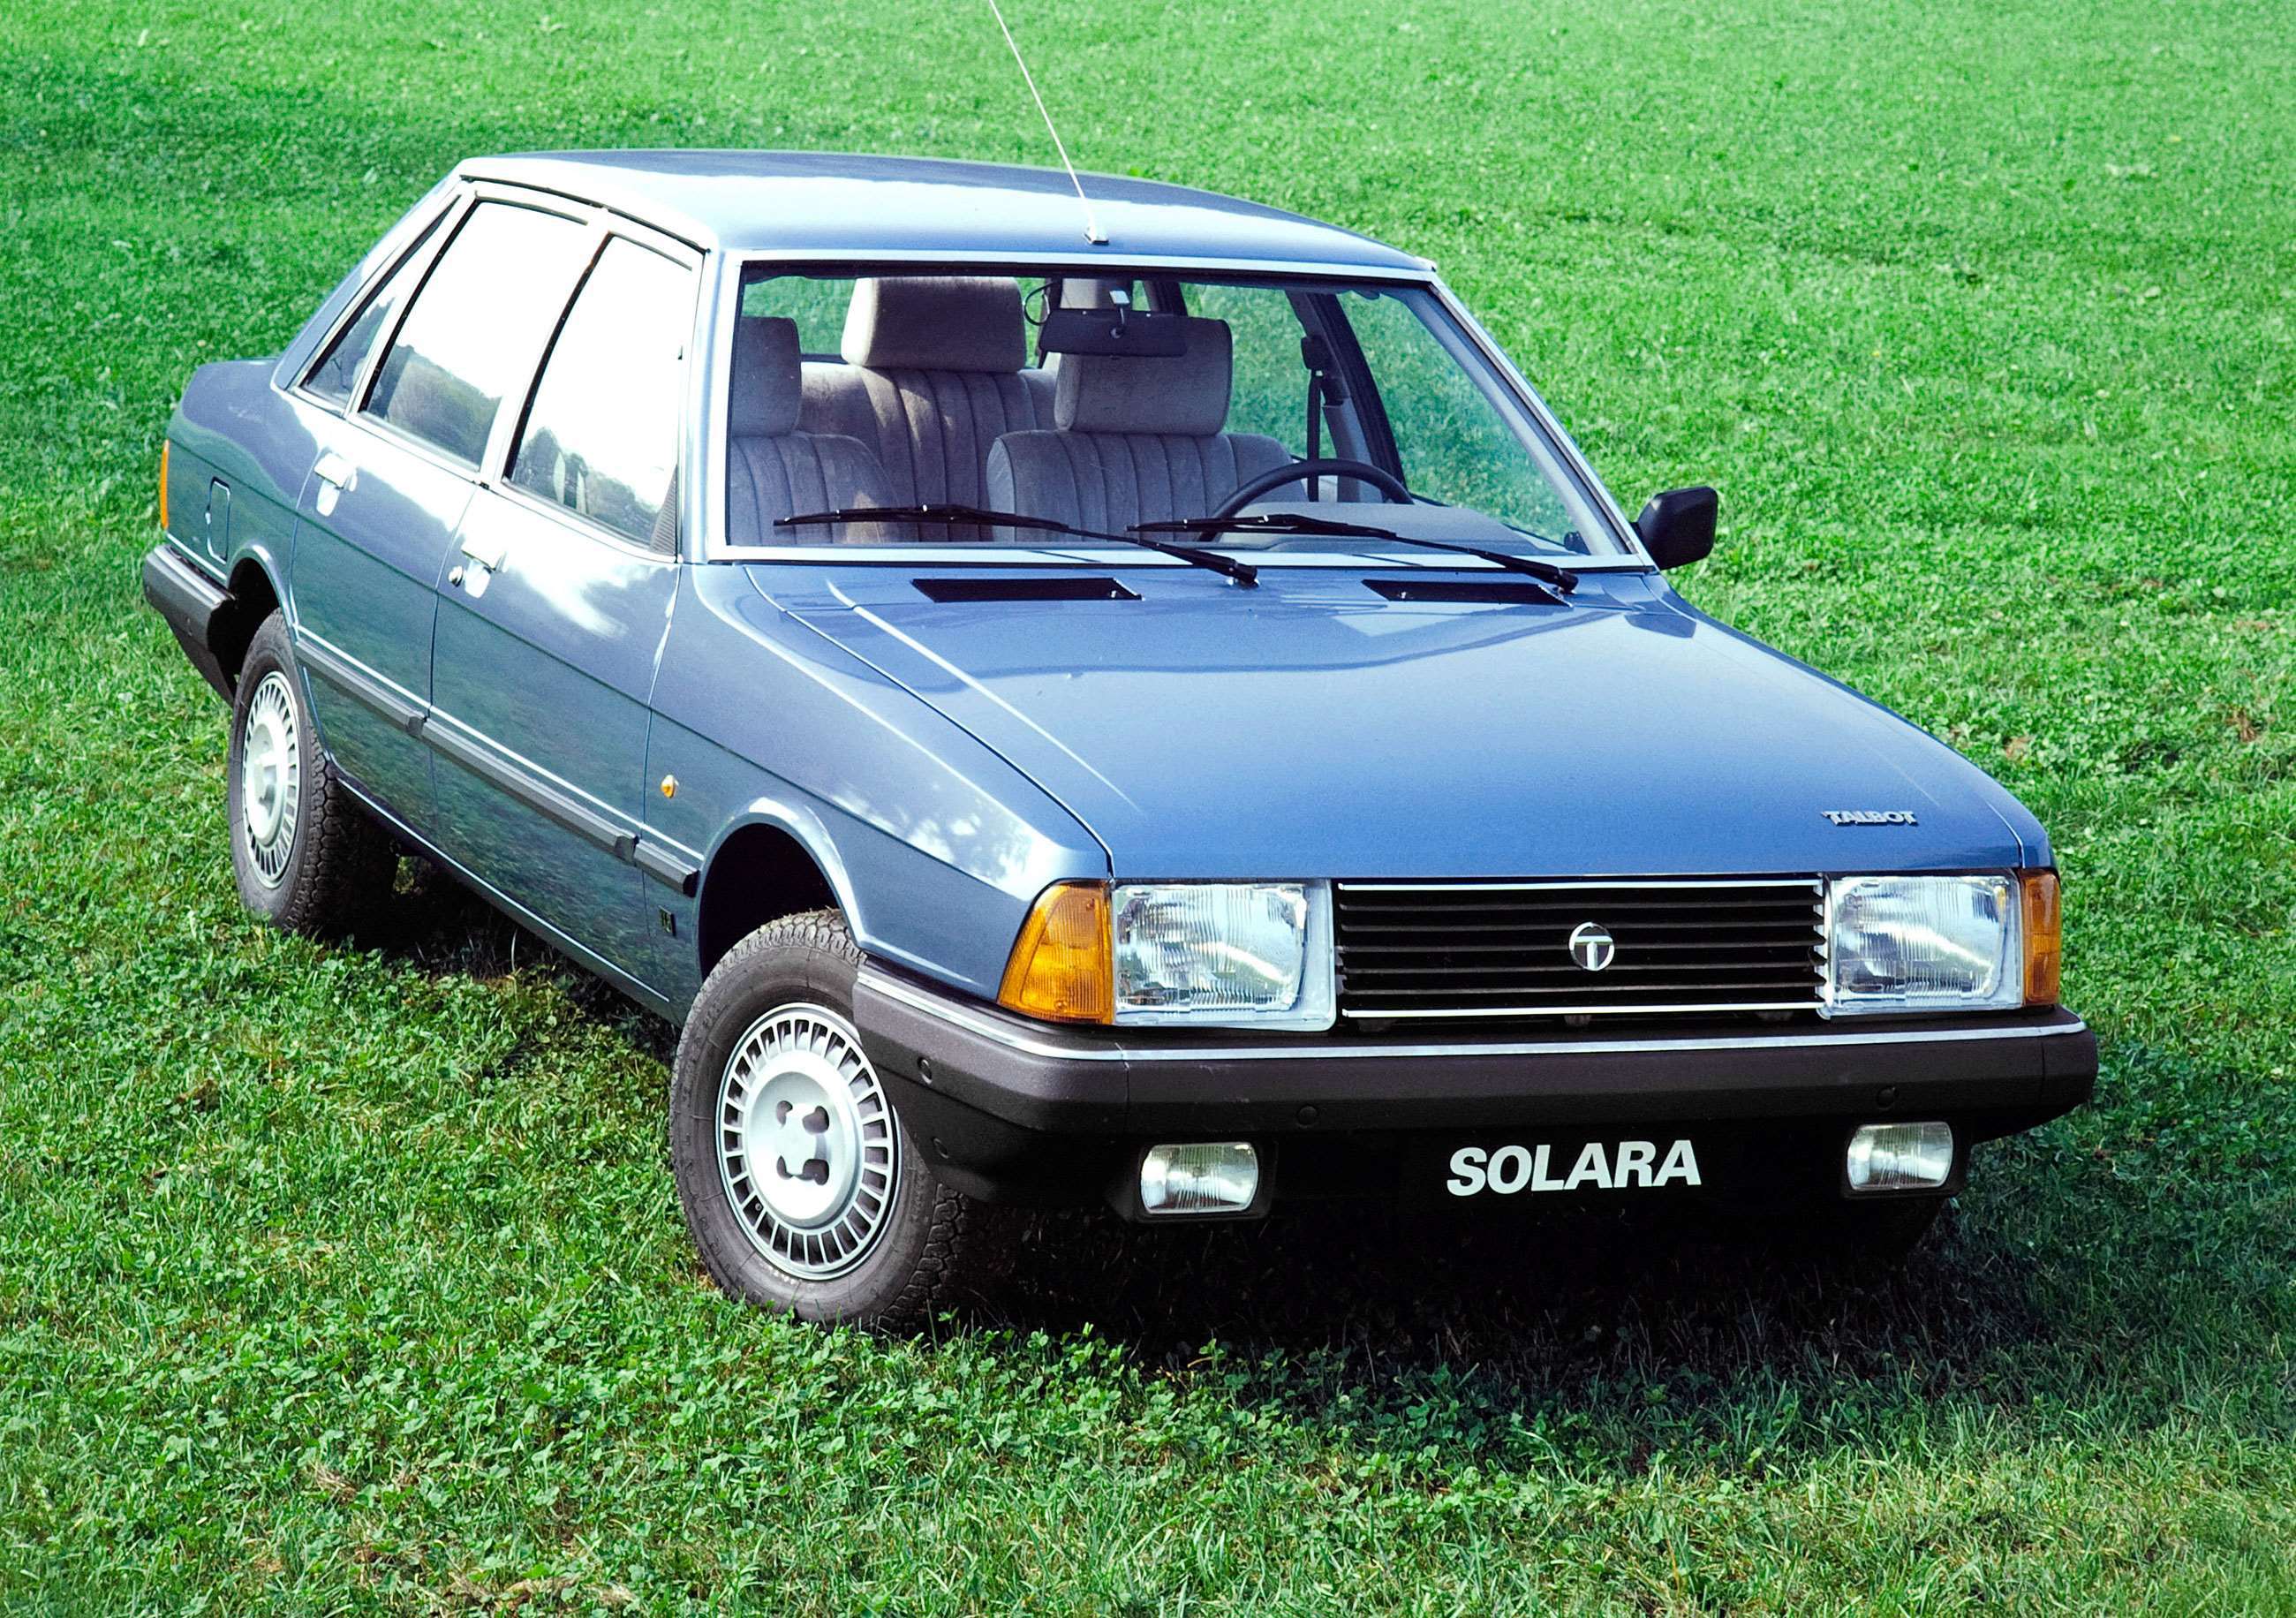 six-automotive-flops-1980-3-talbot-solara-goodwood-07122020.jpg